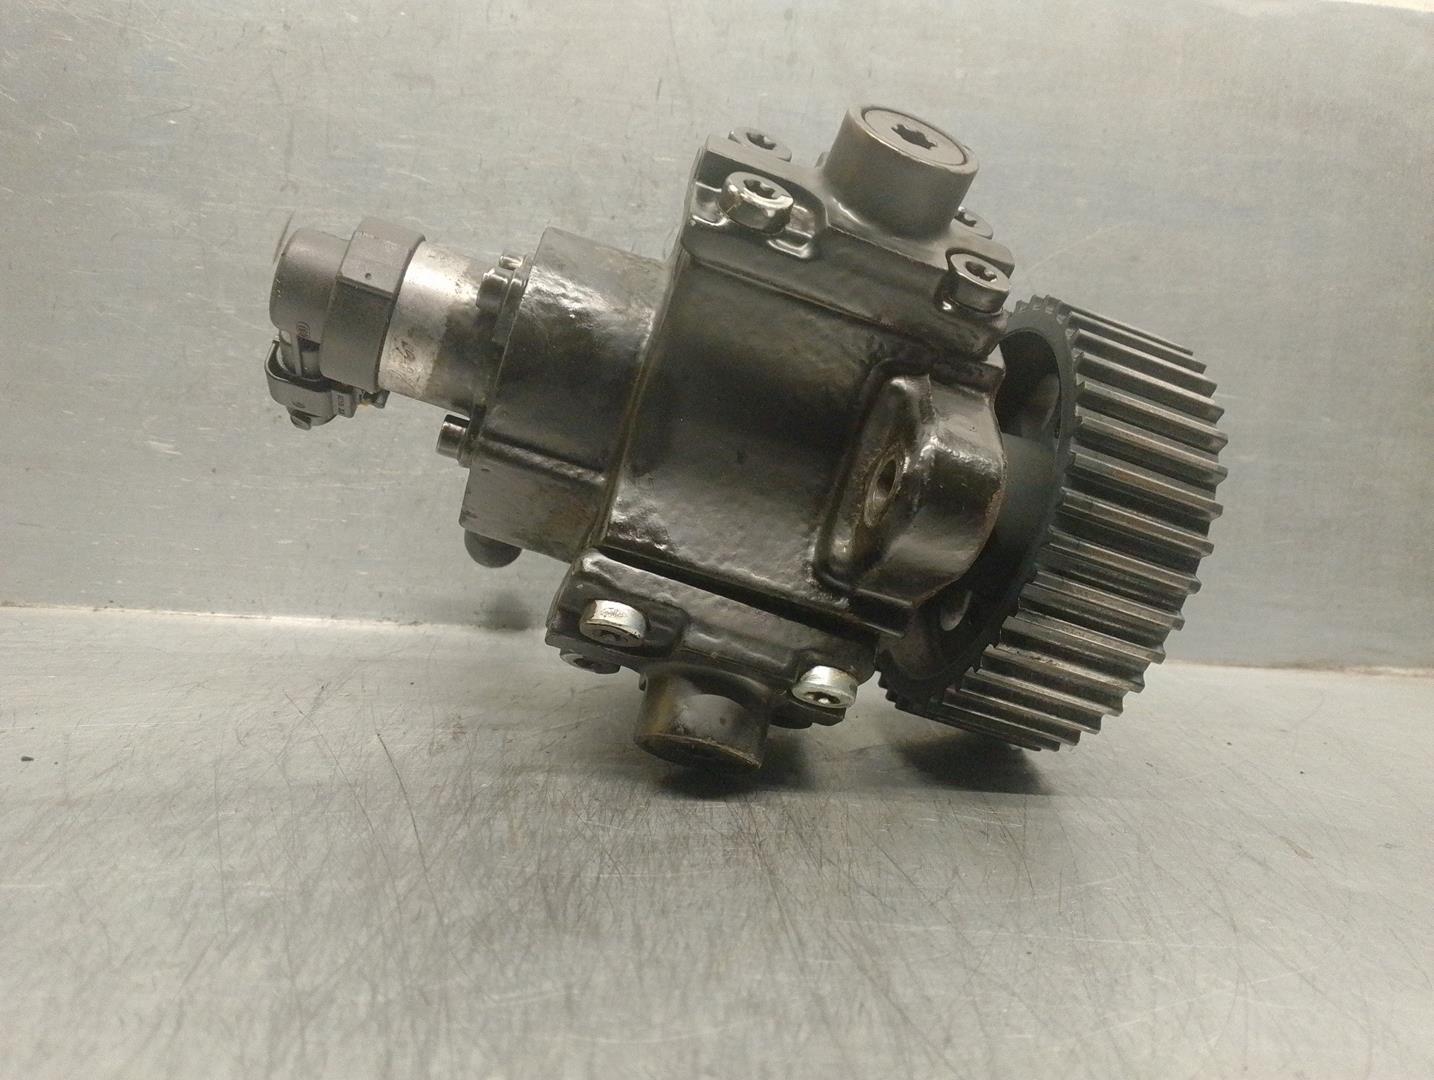 OPEL Vectra C (2002-2005) High Pressure Fuel Pump 0445010097, 0445010097 19923341